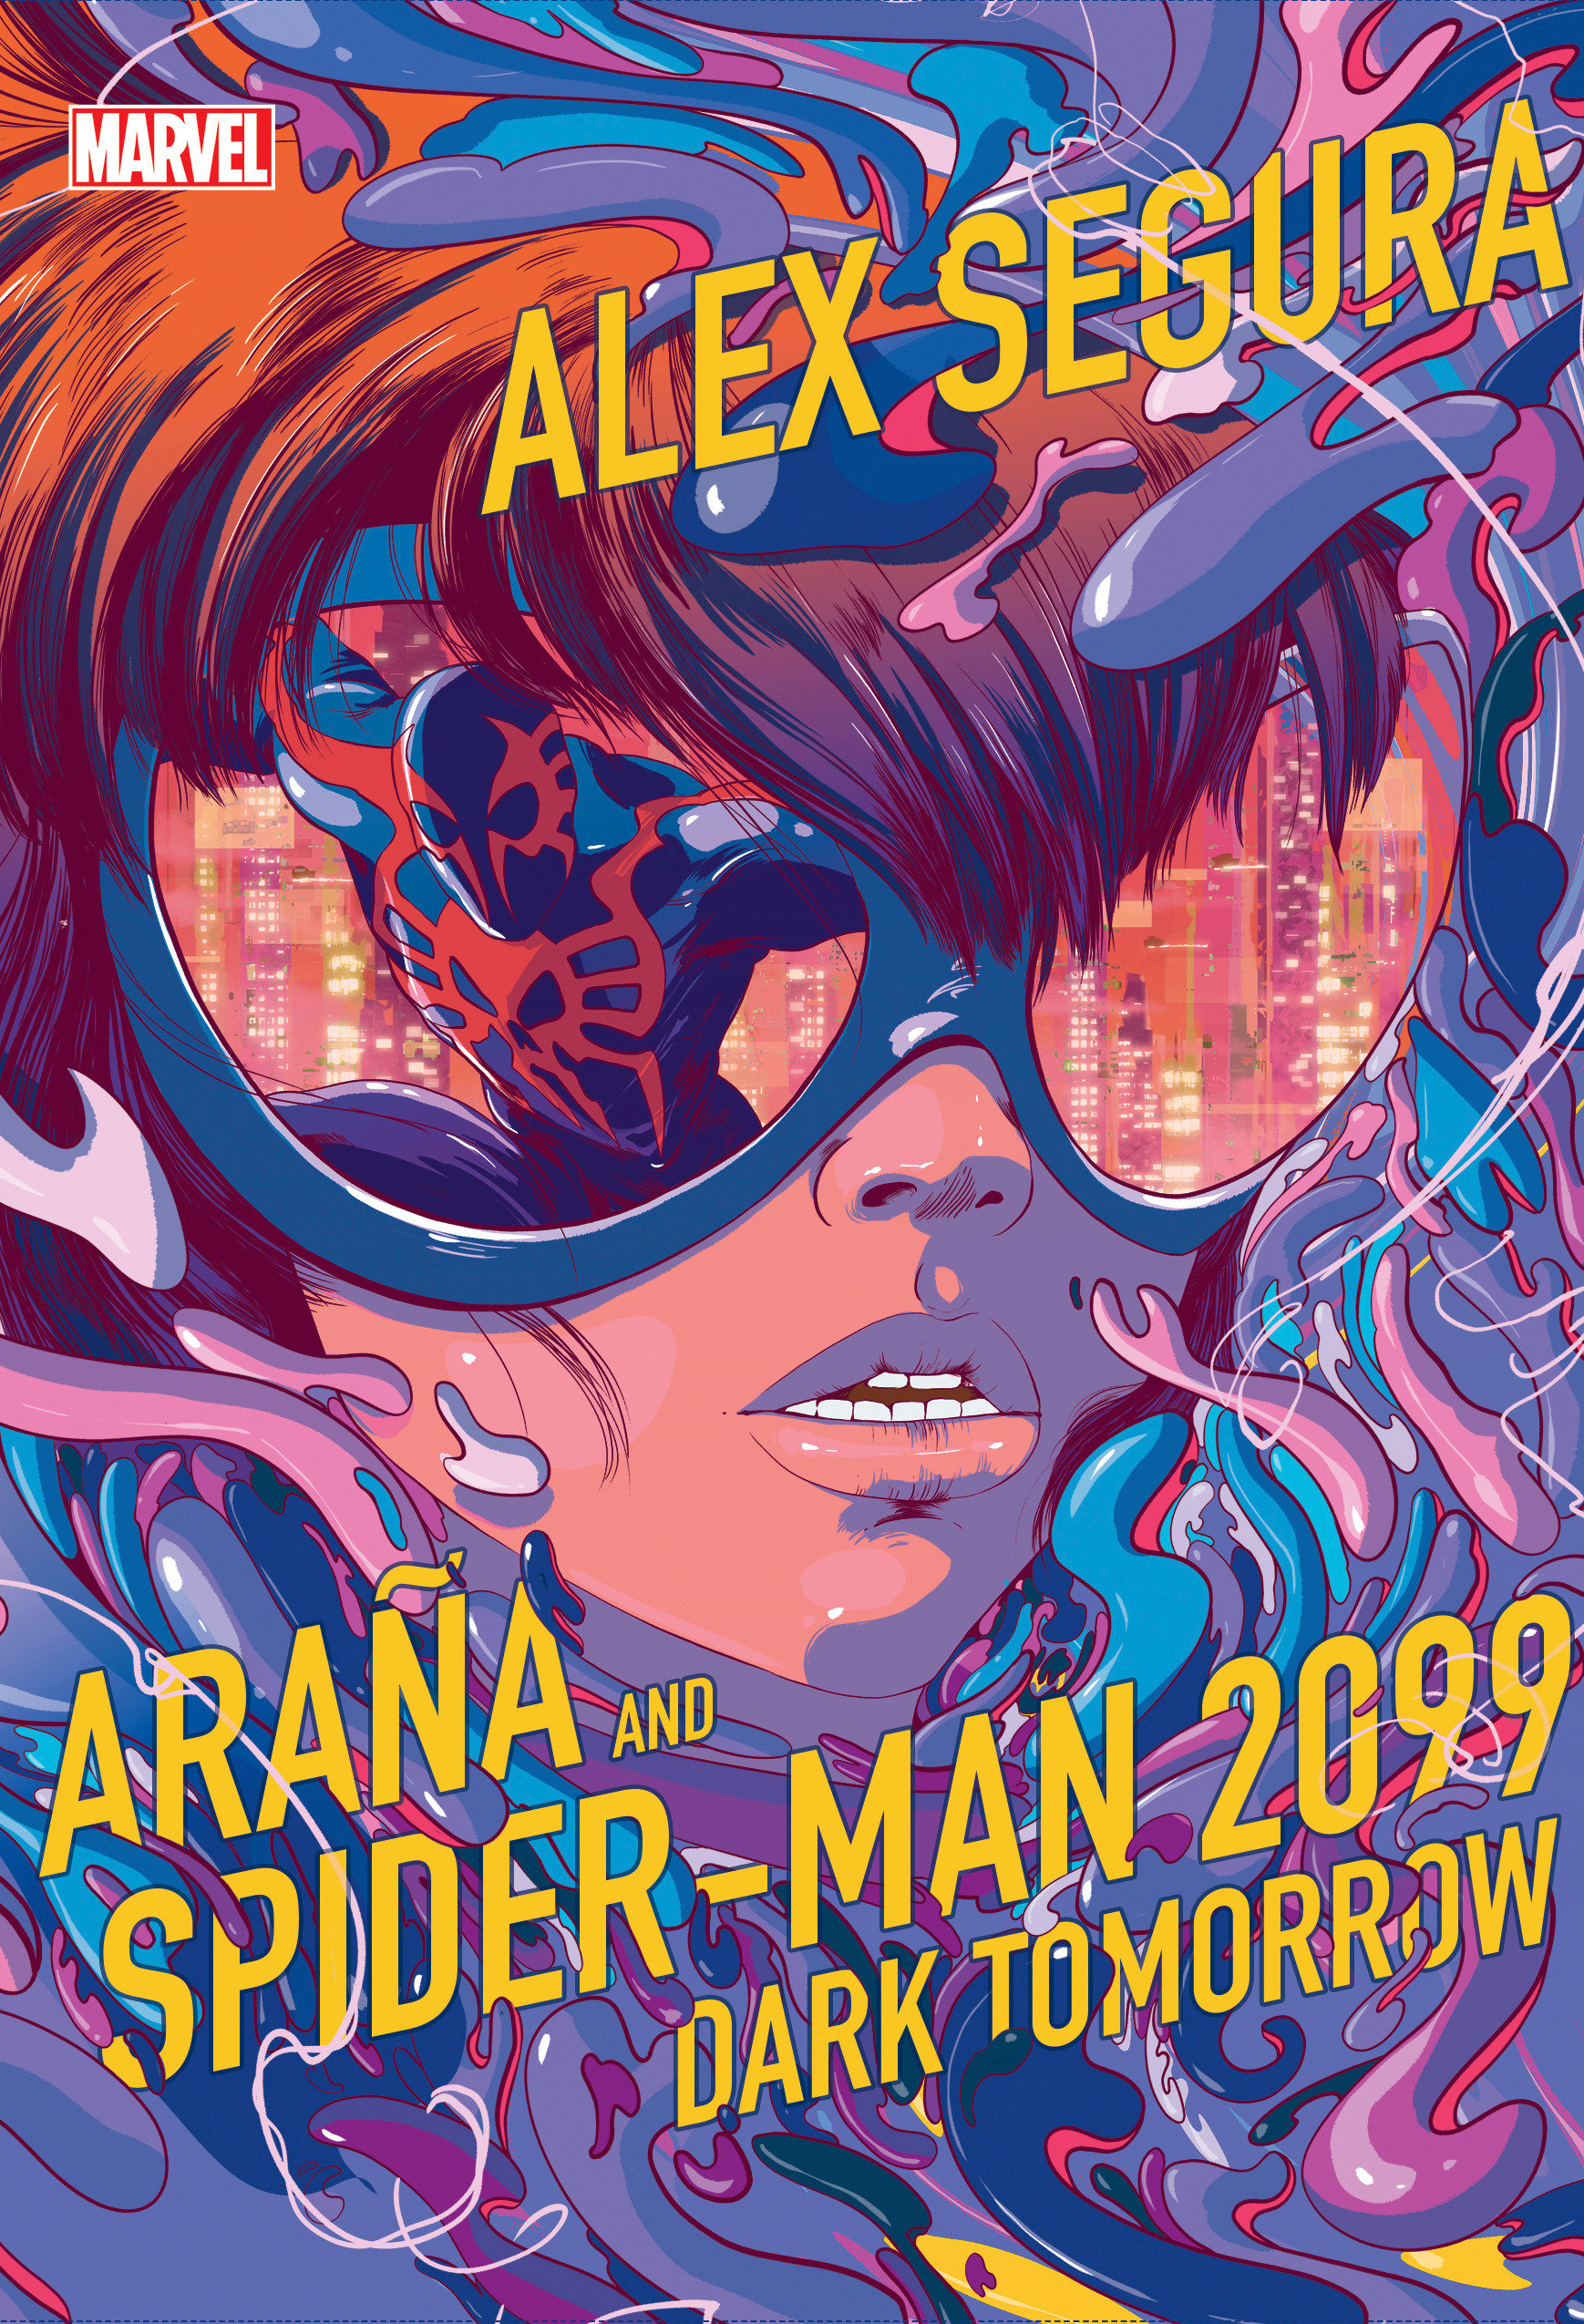 Arana & Spider Man 2099 Novel Hardcover Dark Tomorrow